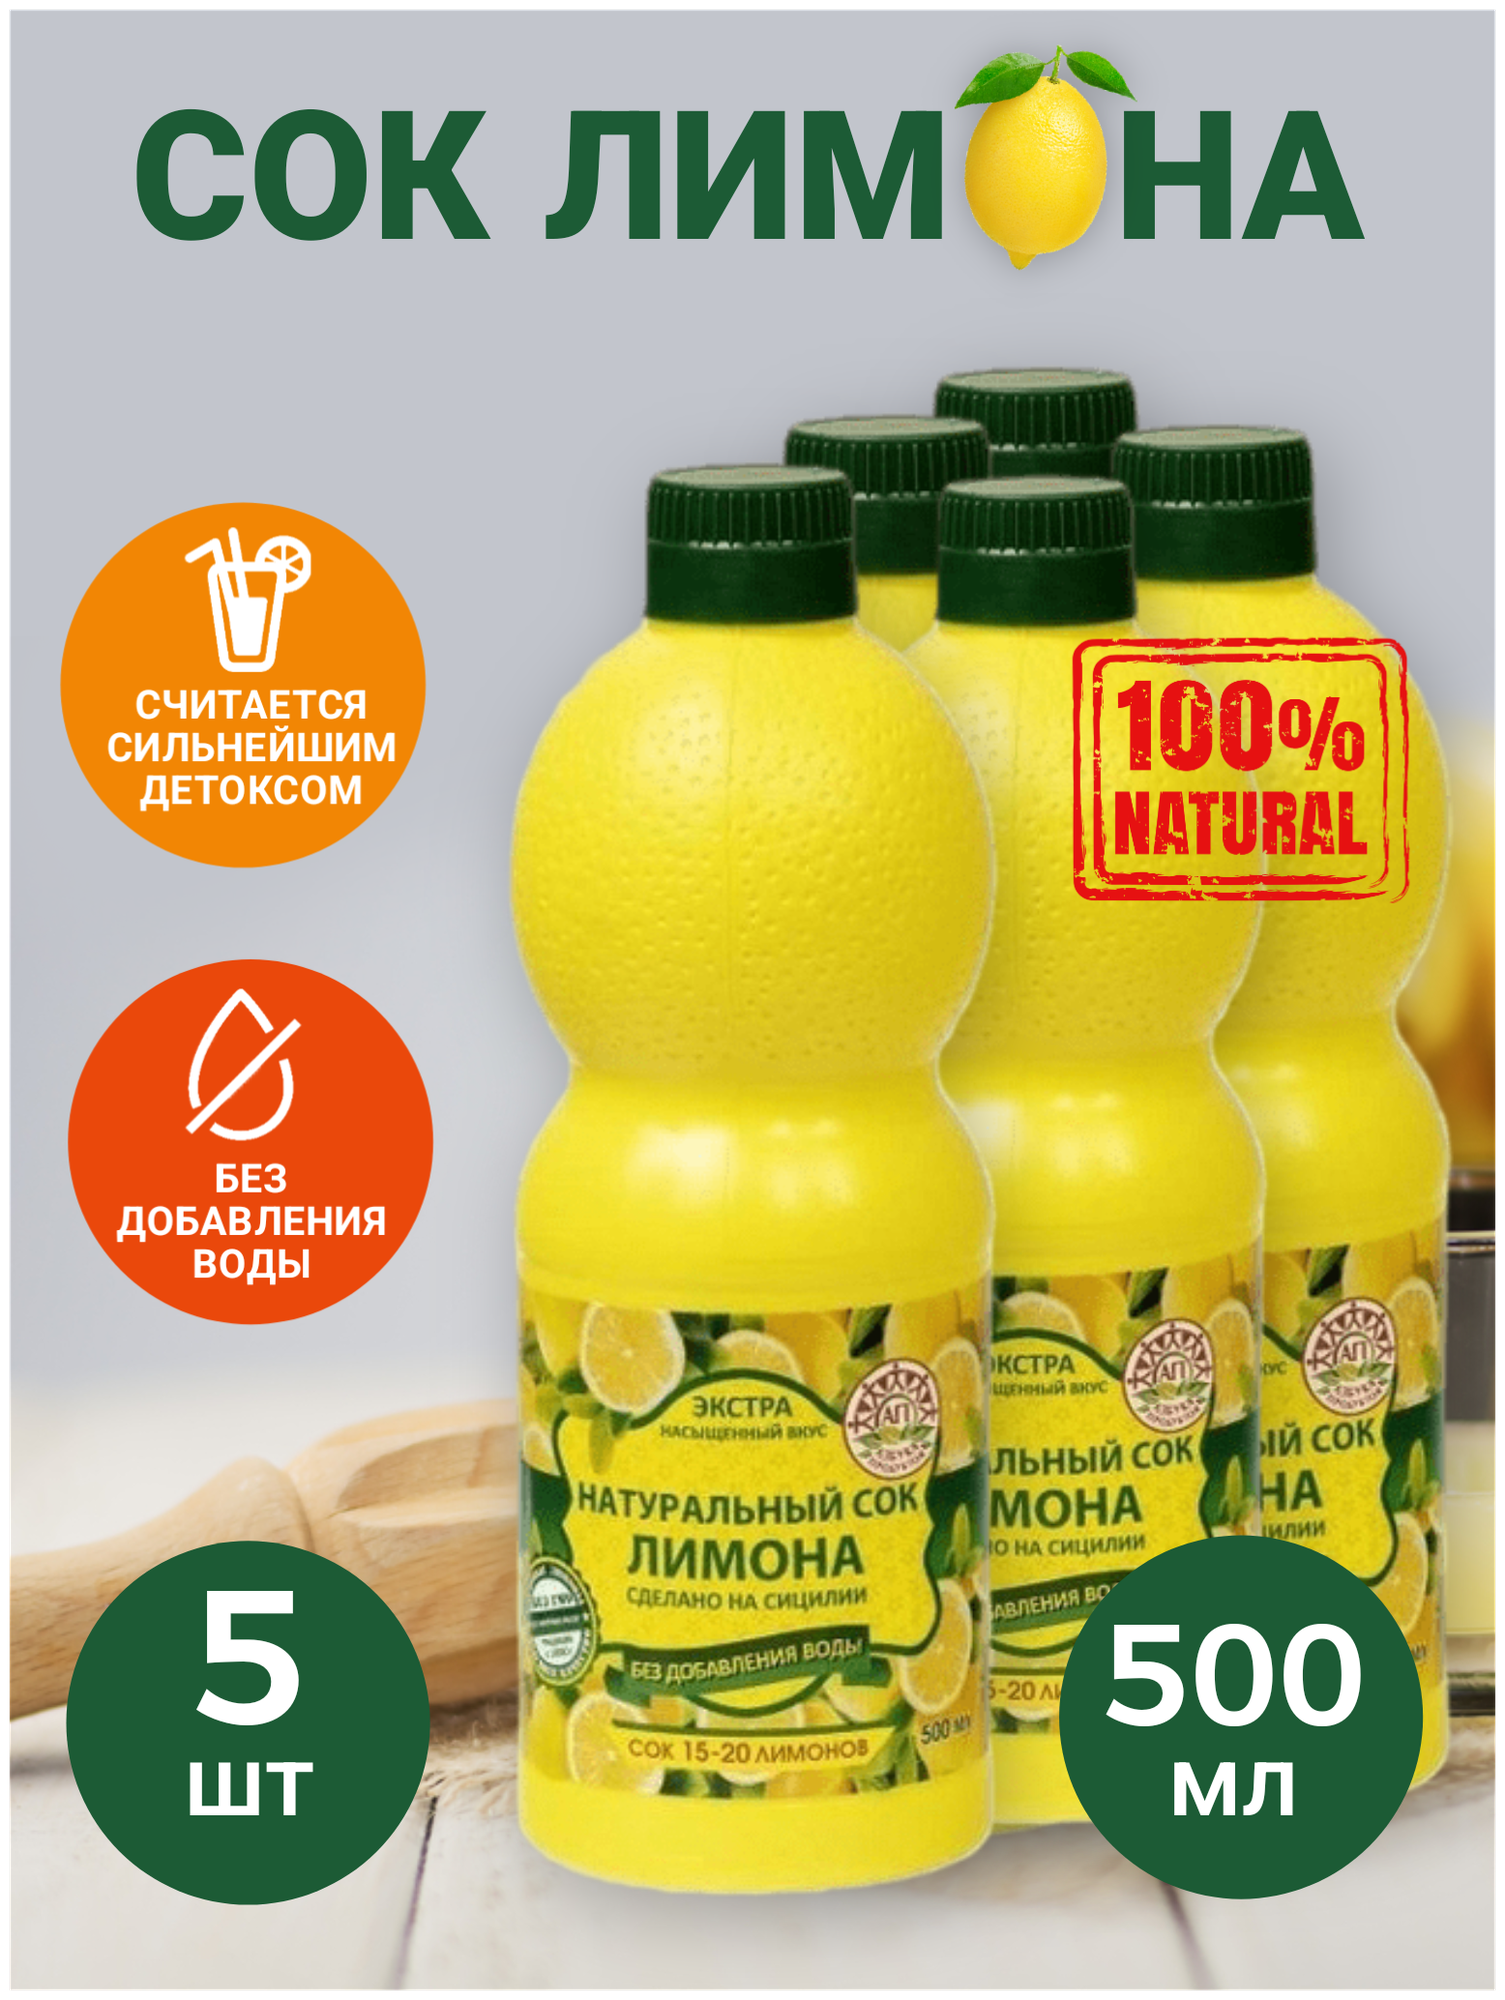 Натуральный сок лимона 500мл - 5ШТ